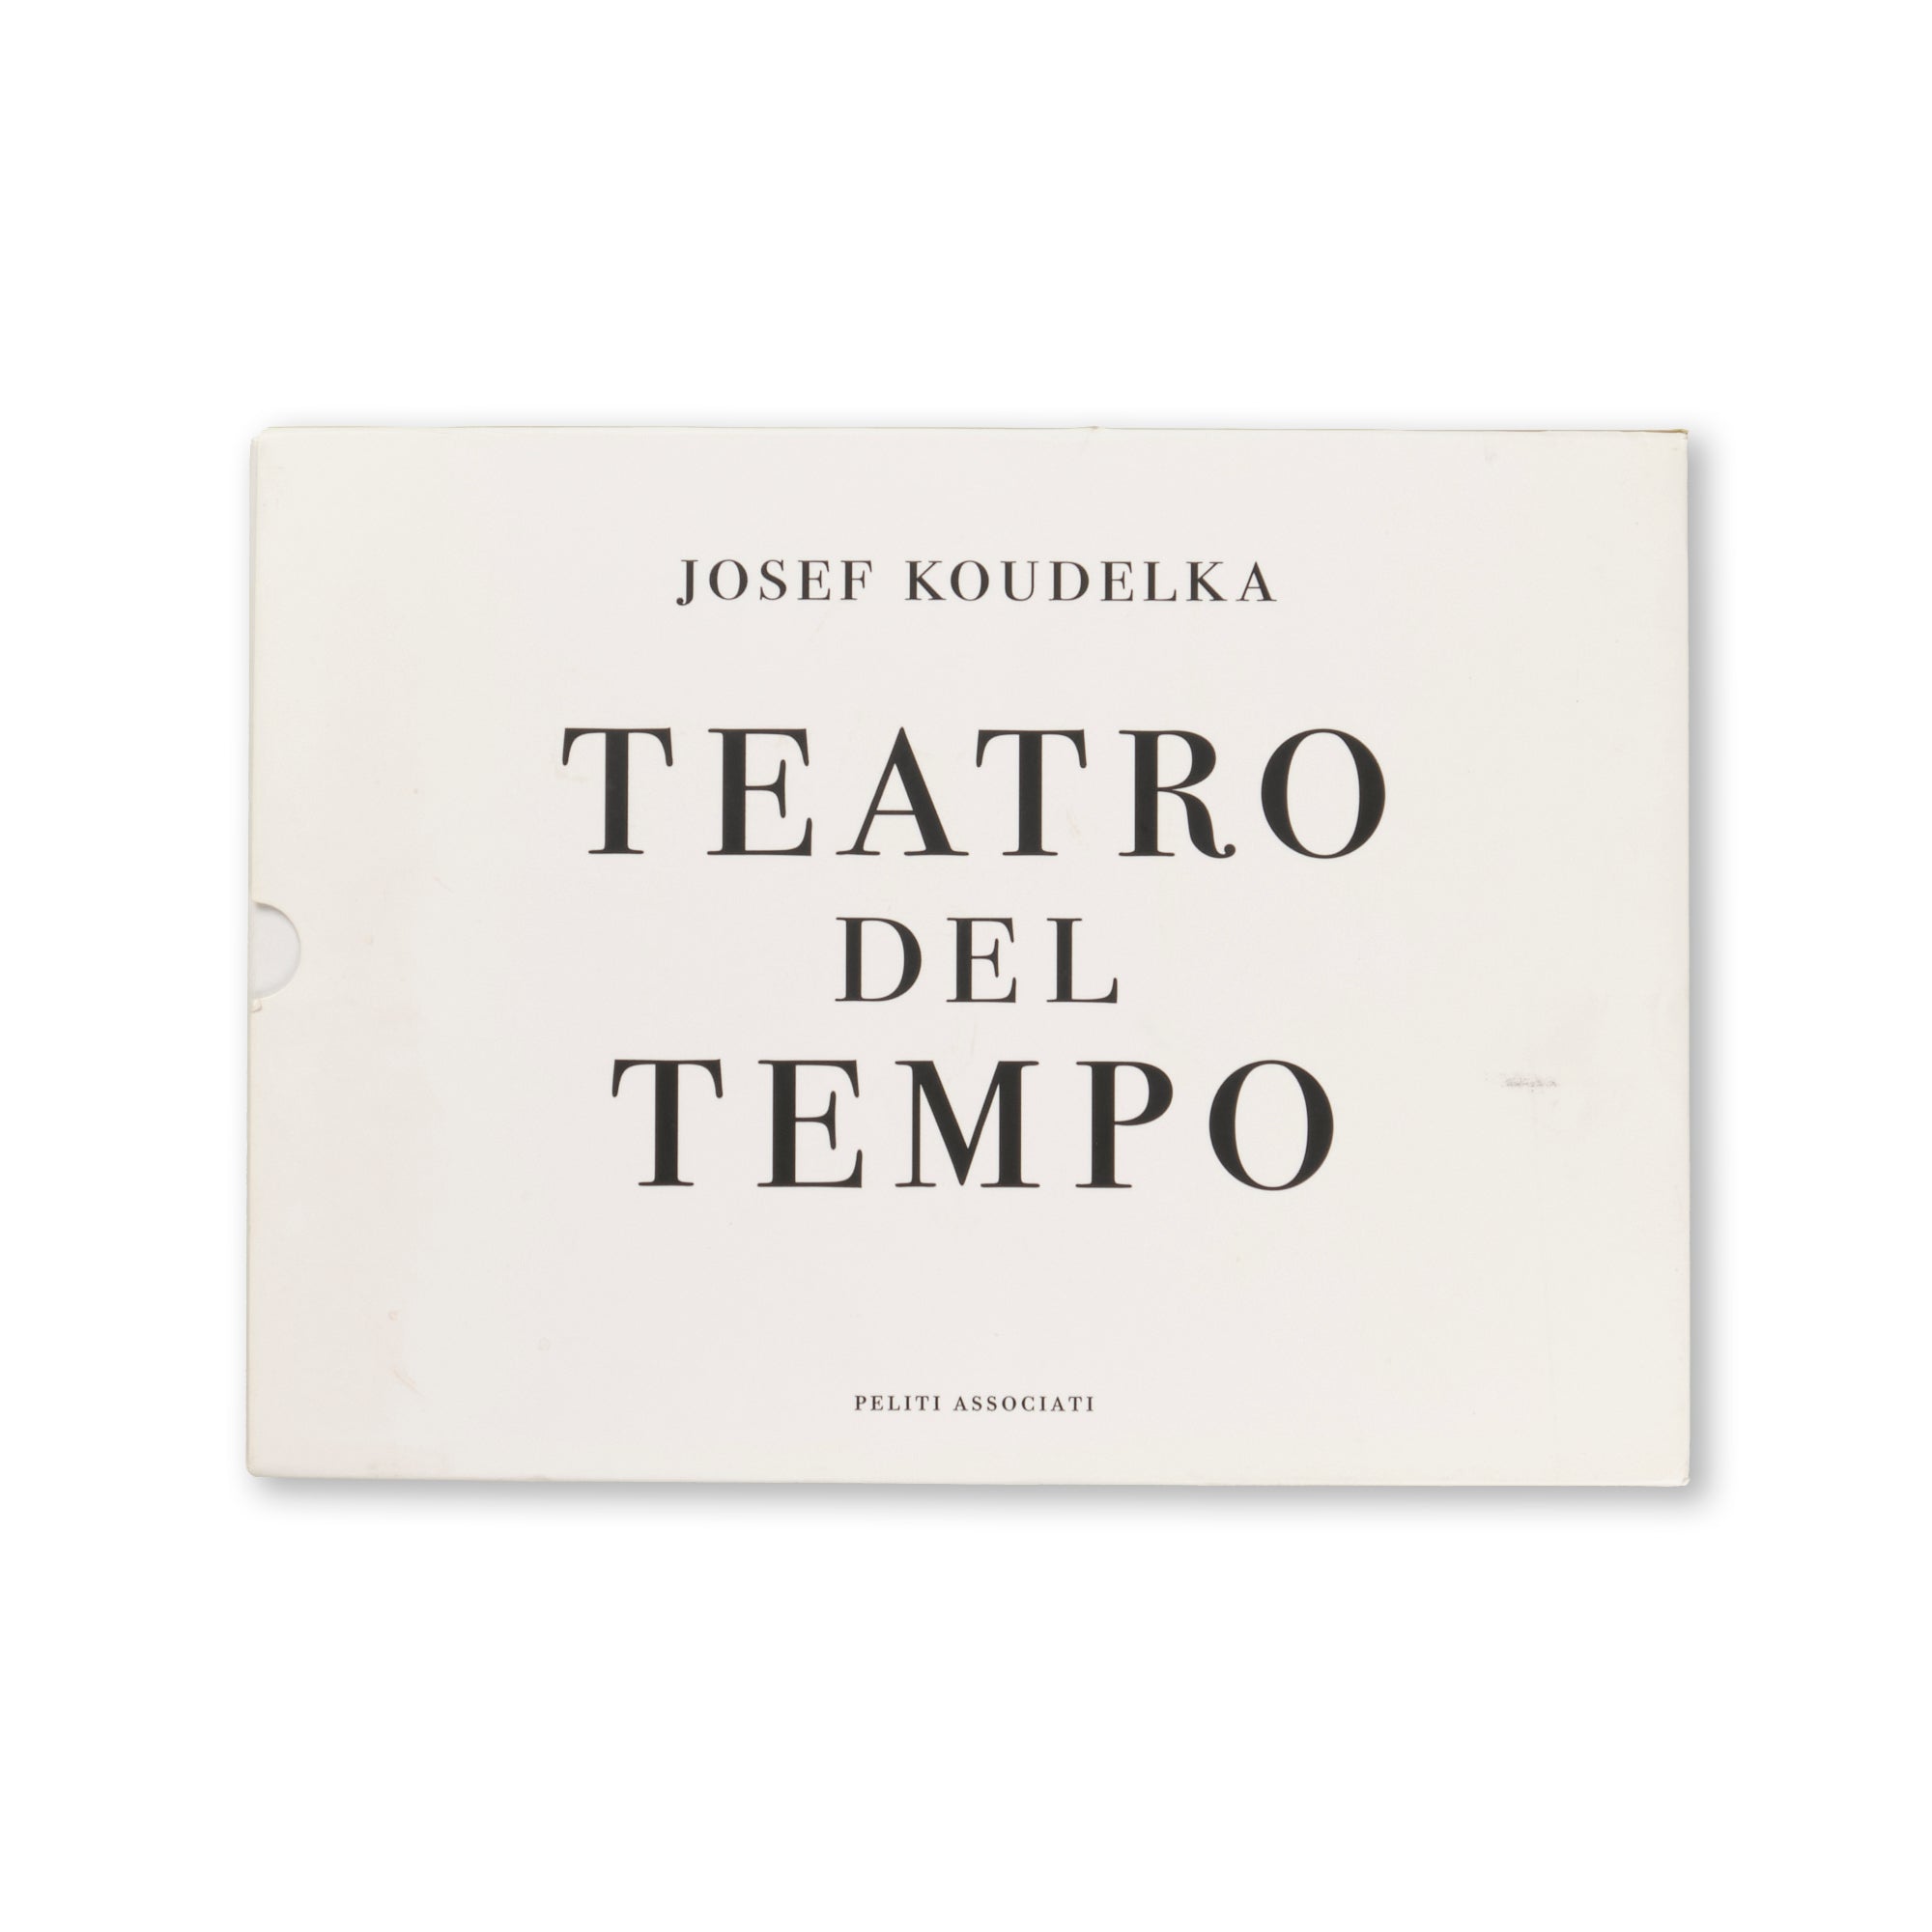 Josef Koudelka - Teatro del Tempo